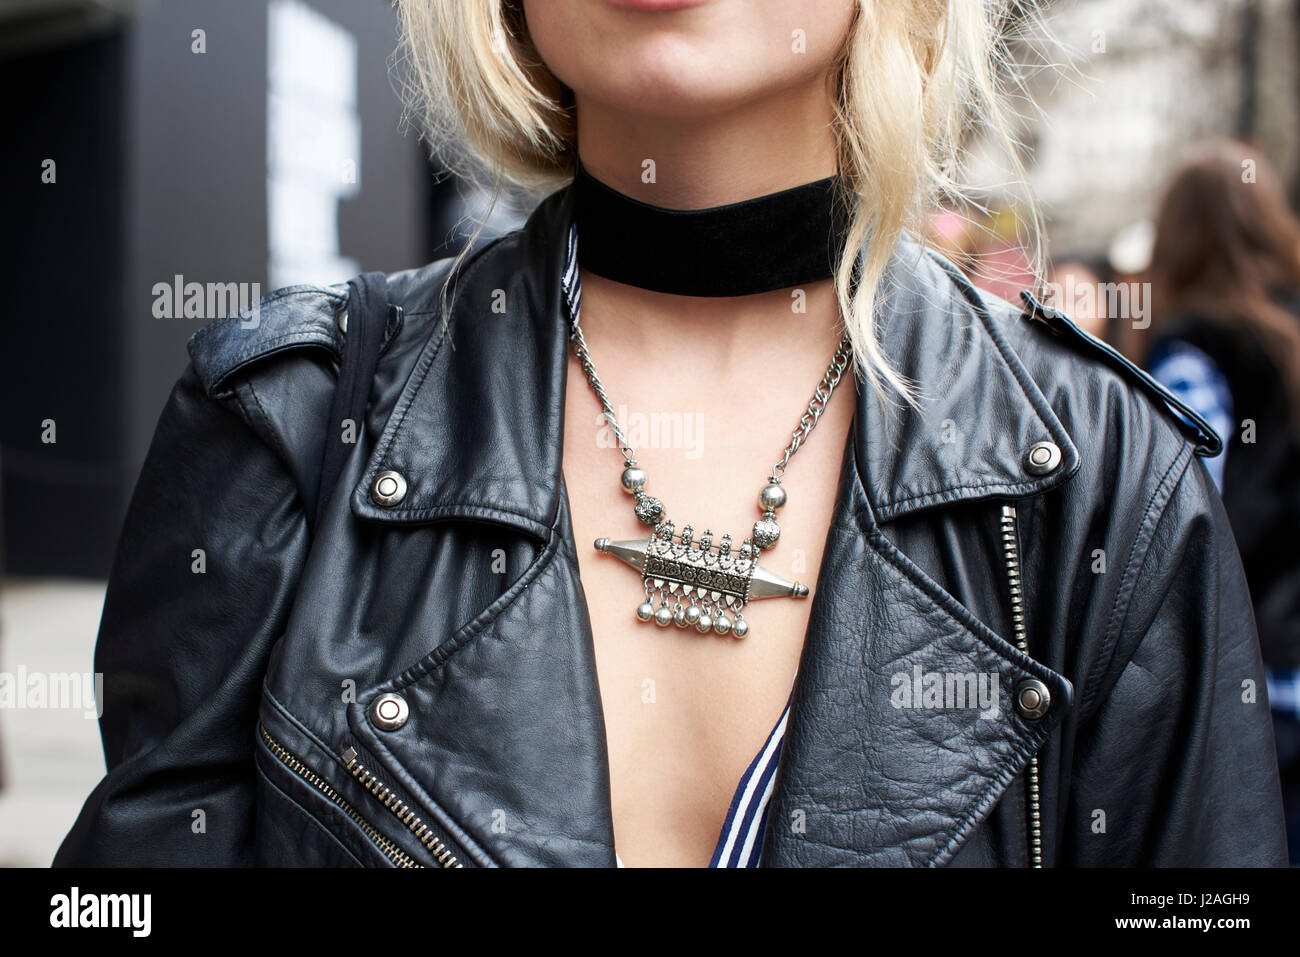 Londres - Février 2017 : récolte de femme portant un manteau de cuir noir, collier noir et argent collier de la rue lors de la London Fashion Week, horizontal, vue avant Banque D'Images